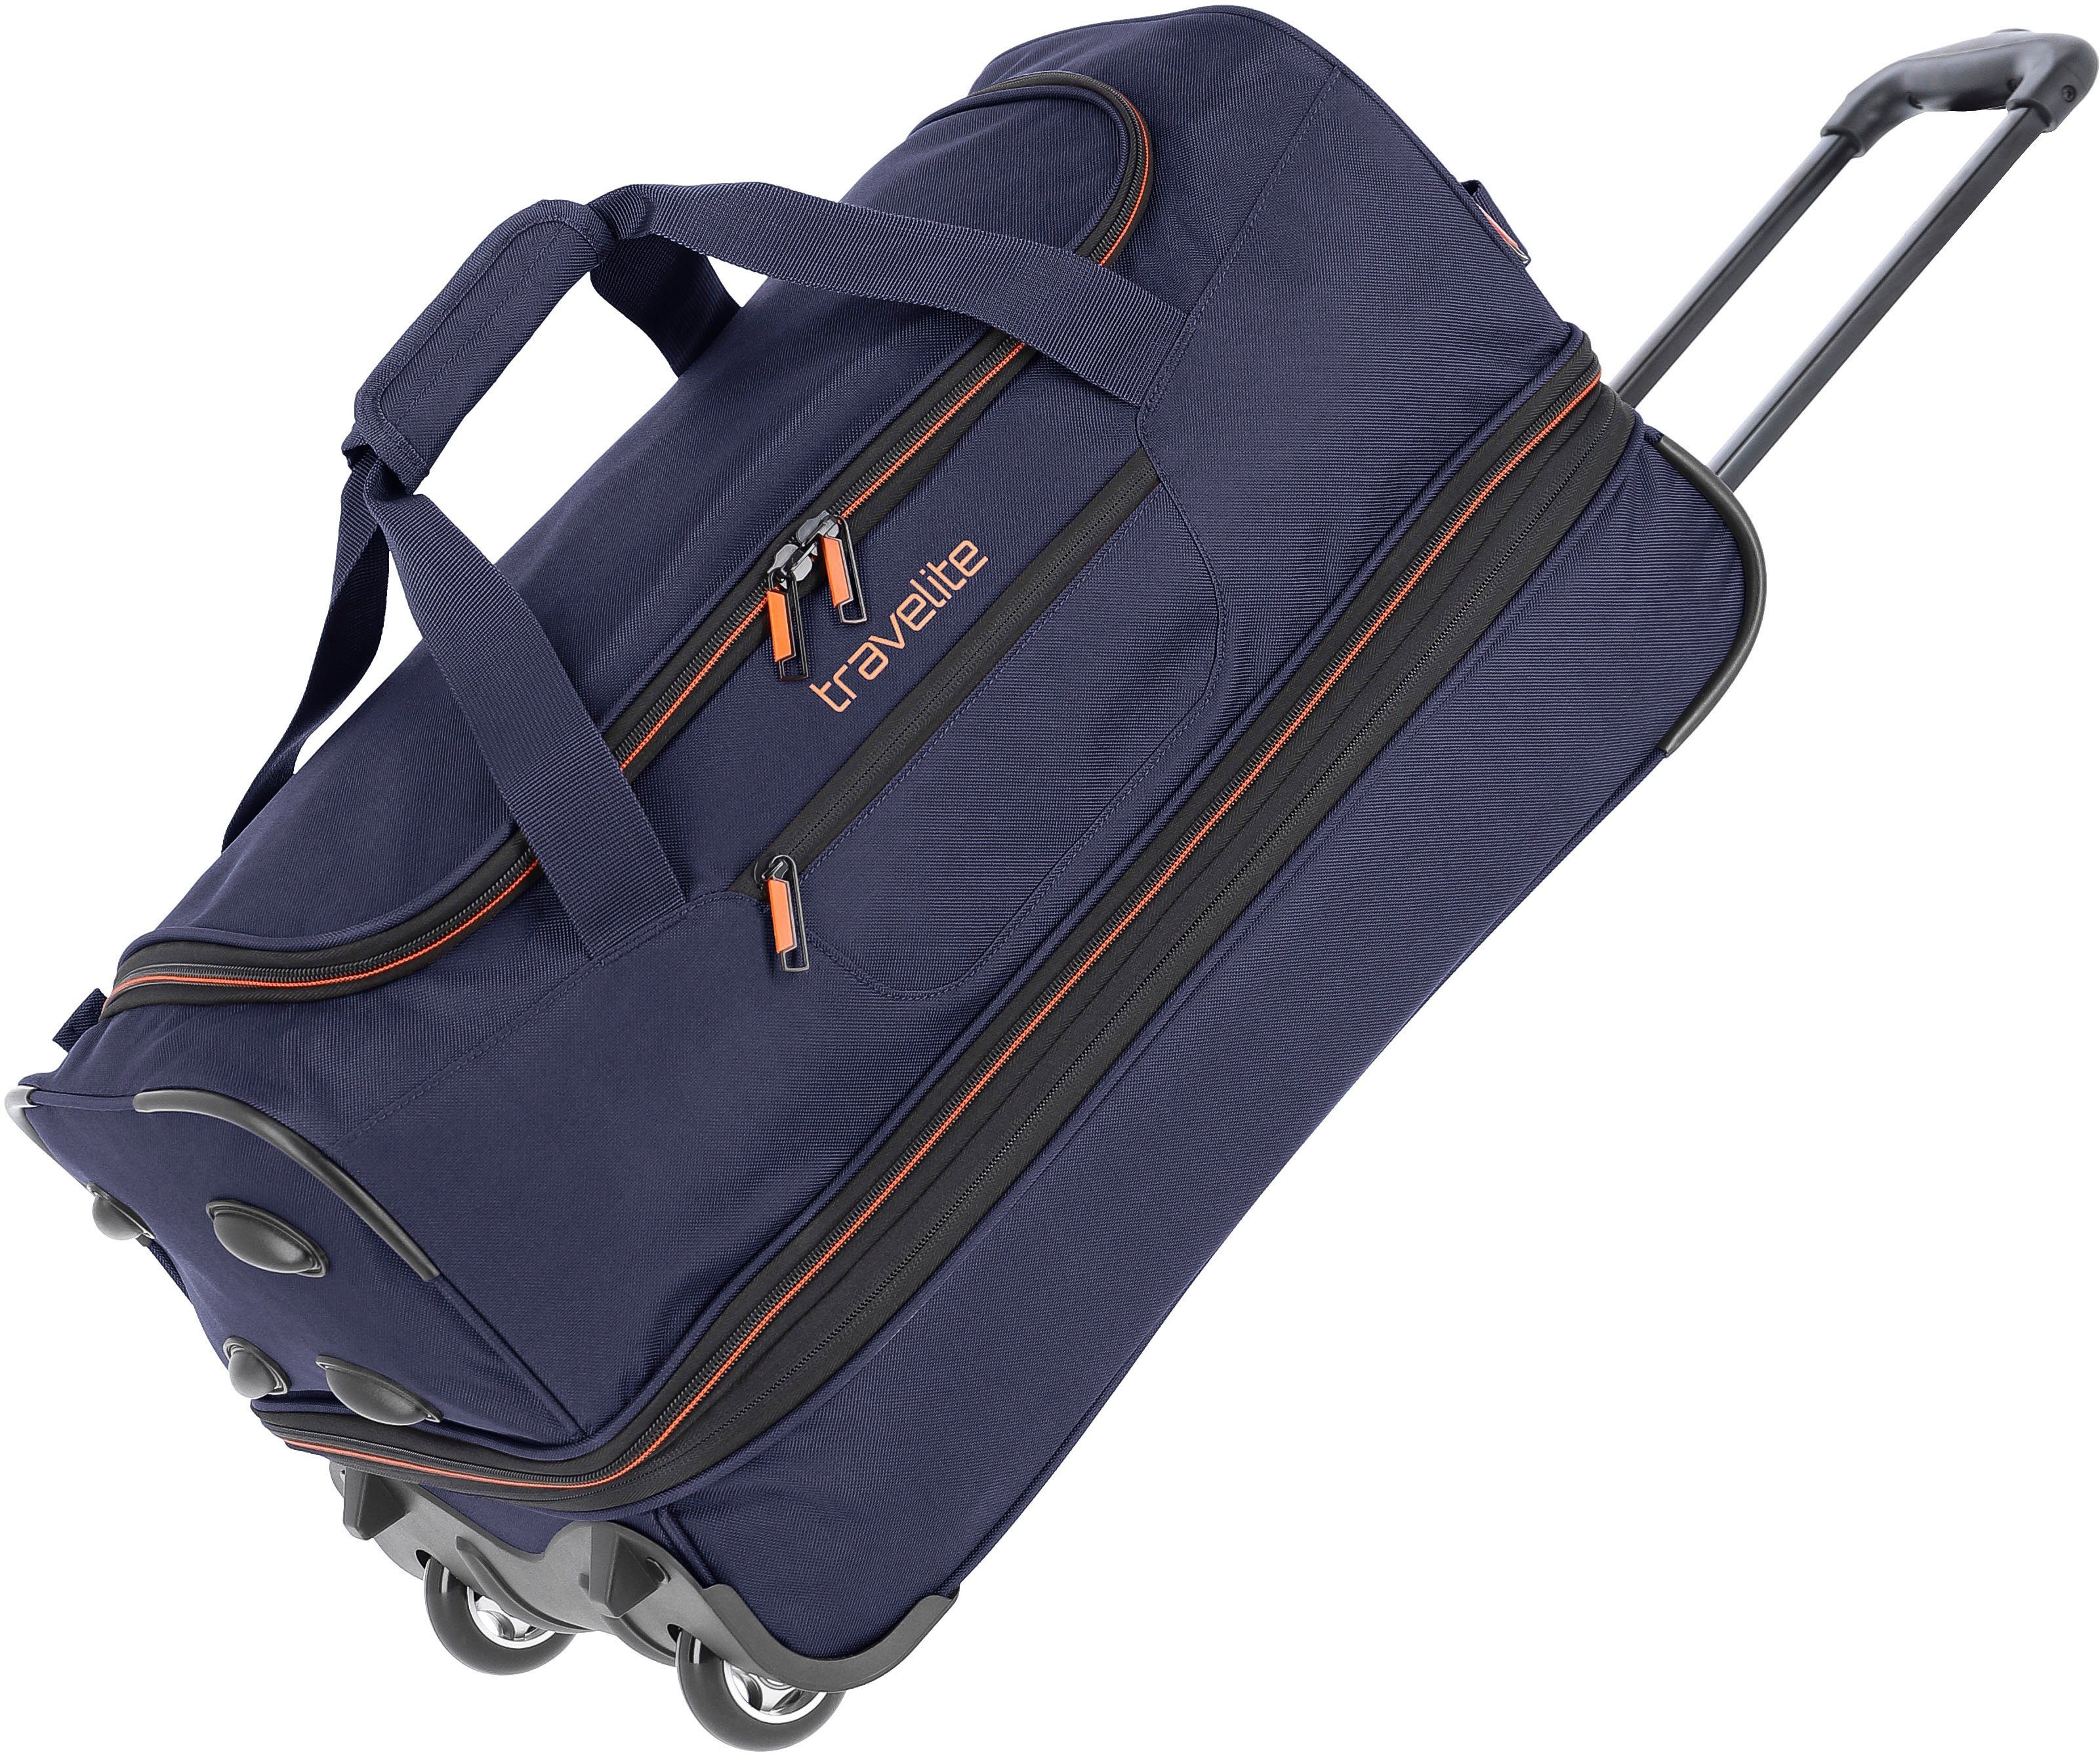 travelite Reisetasche Basics, 55 cm, marine/orange, Duffle Bag Sporttasche mit Trolleyfunktion und Volumenerweiterung